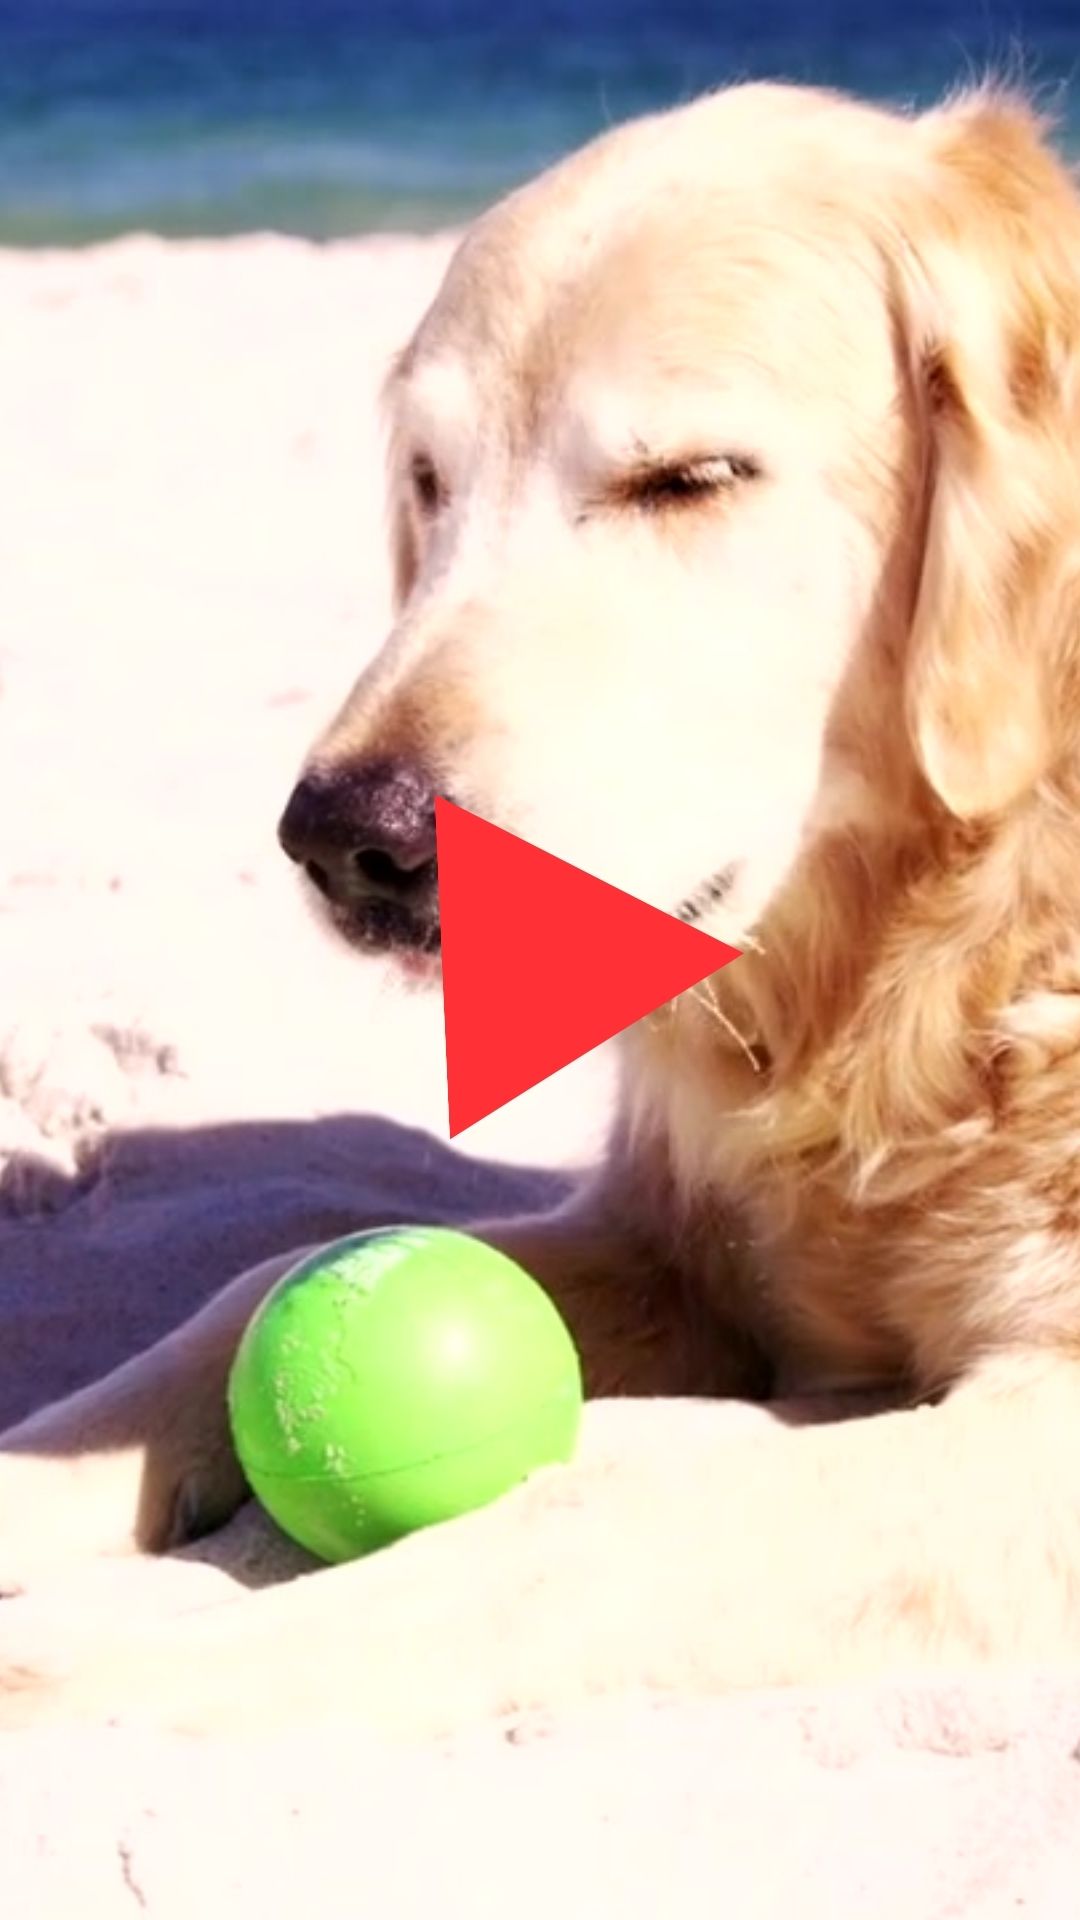 Heat Stroke Symptoms in Dogs Video